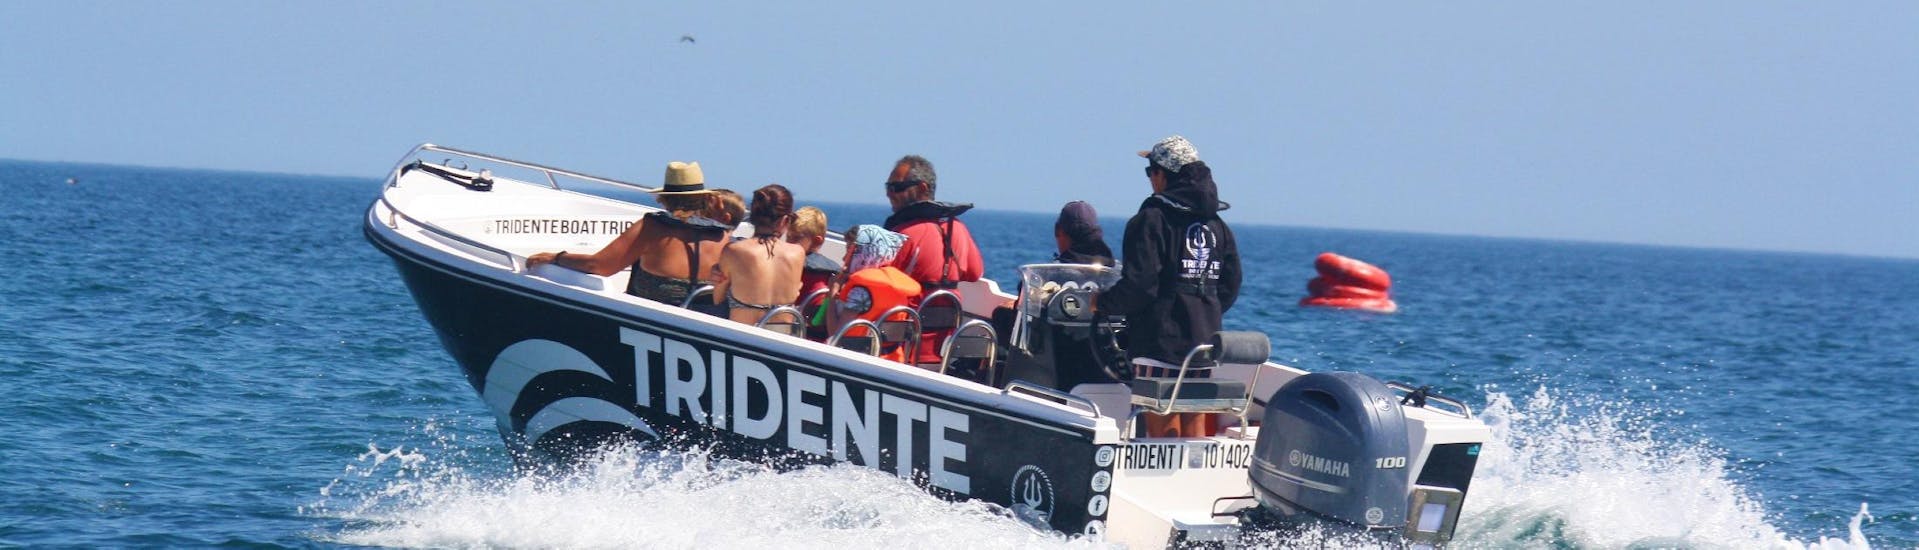 Lors d'une balade en bateau vers la grotte de Benagil depuis Armação De Pêra avec Tridente Boat Trips Algarve, les passagers profitent de la promenade le long de la côte de l'Algarve en compagnie de leur capitaine expérimenté.